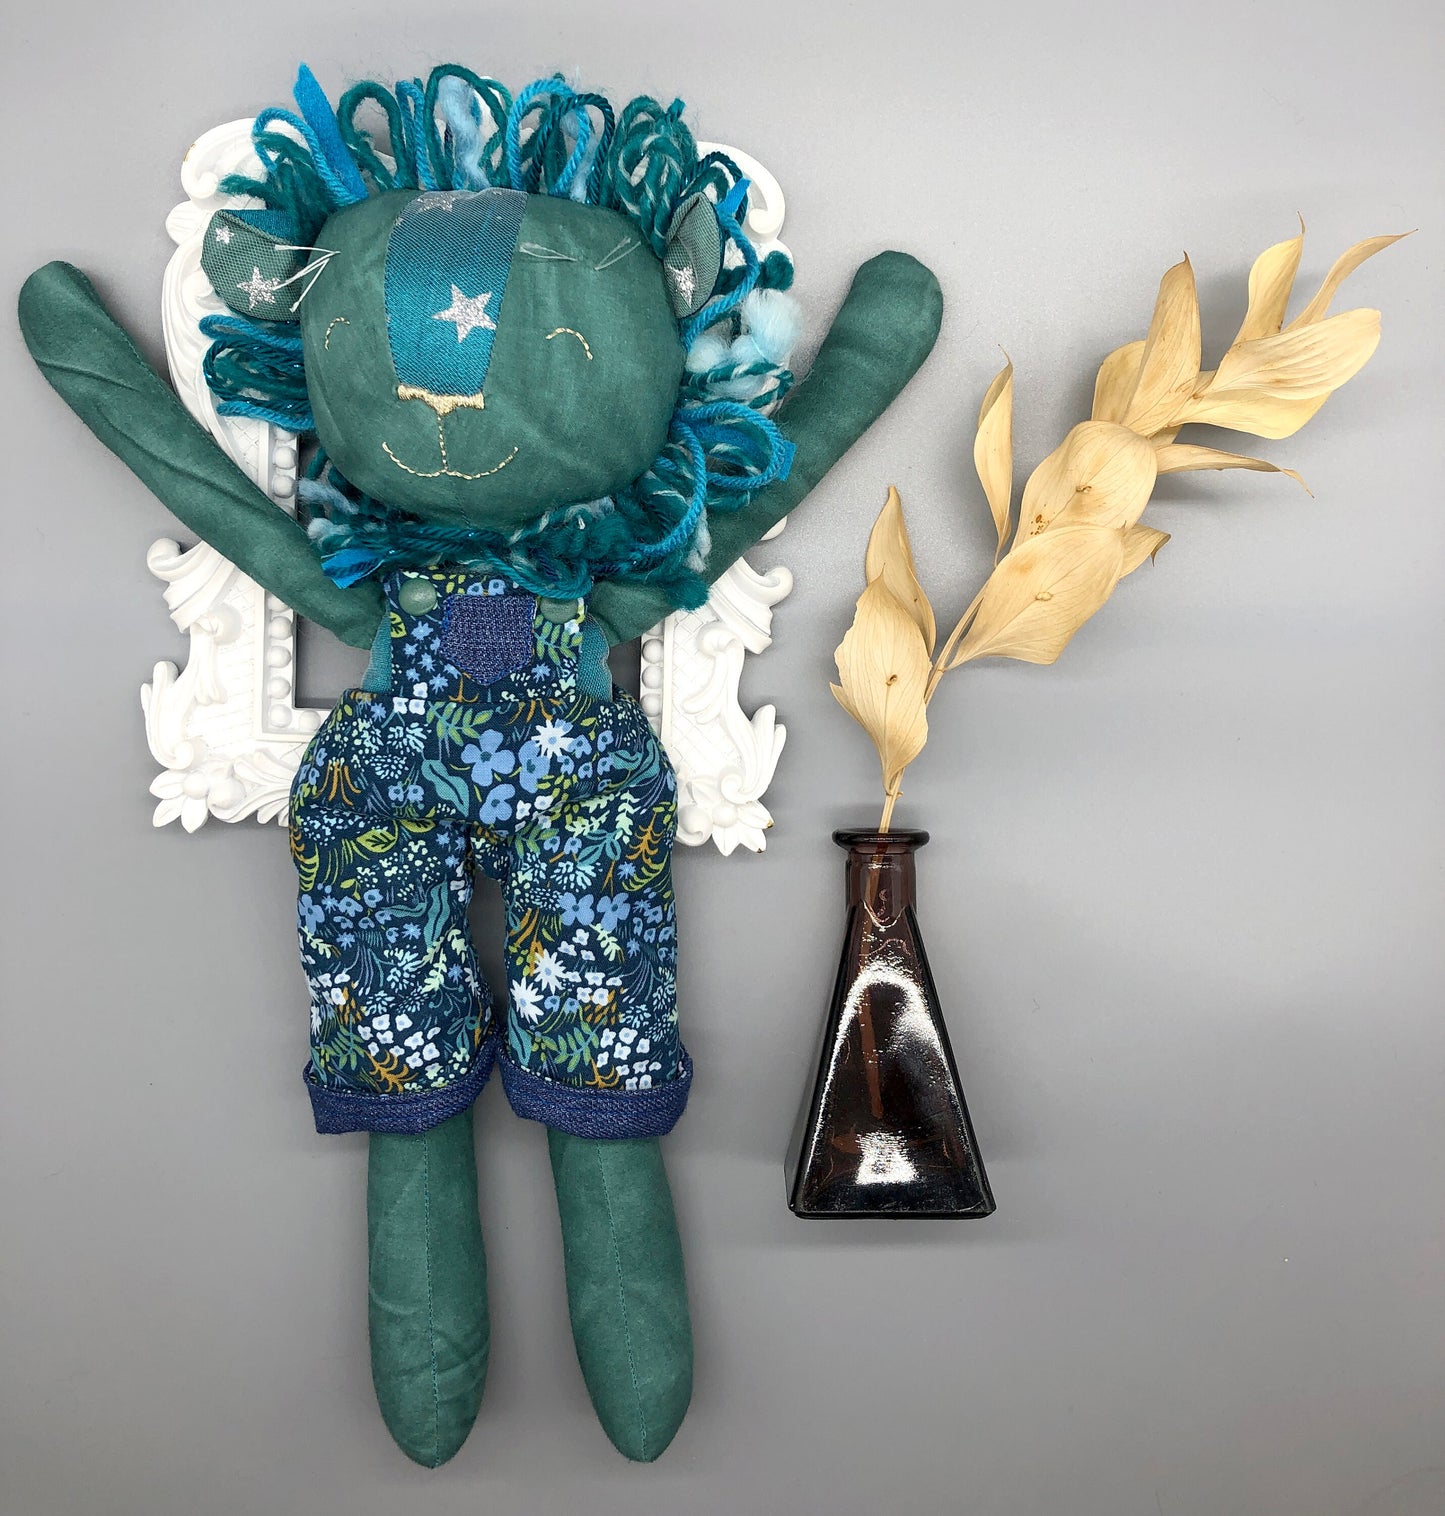 Handmade BLUE Lion Doll, "SUNIL", doll, rag doll, lion doll, lion stuffed animal, stuffed lion, heirloom gift, blue lion, lion toy, boy doll